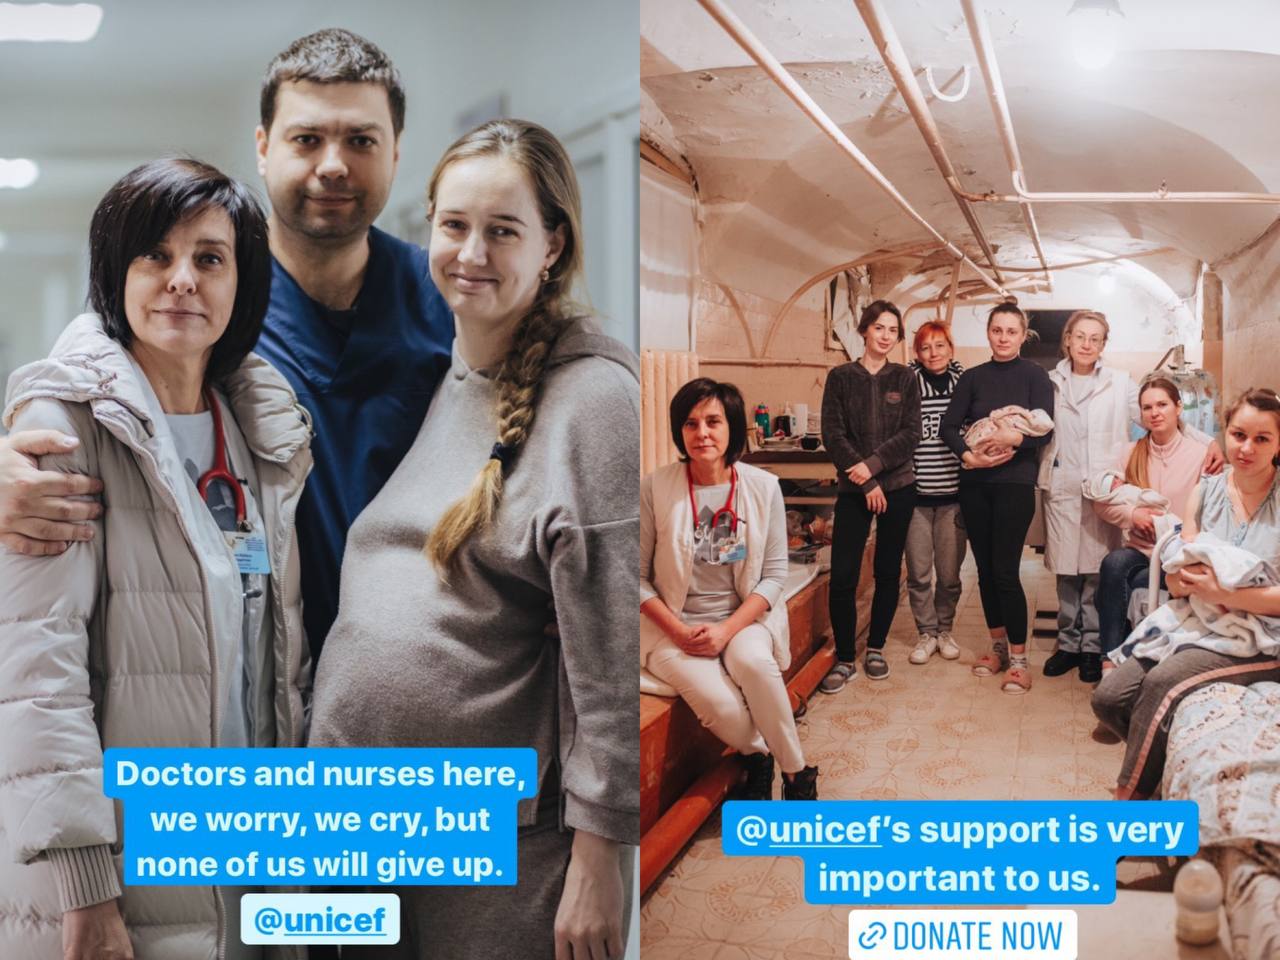 Дэвид Бэкхем передал права на свою страницу Instagram врачу из Харькова: чтобы все увидели Украину